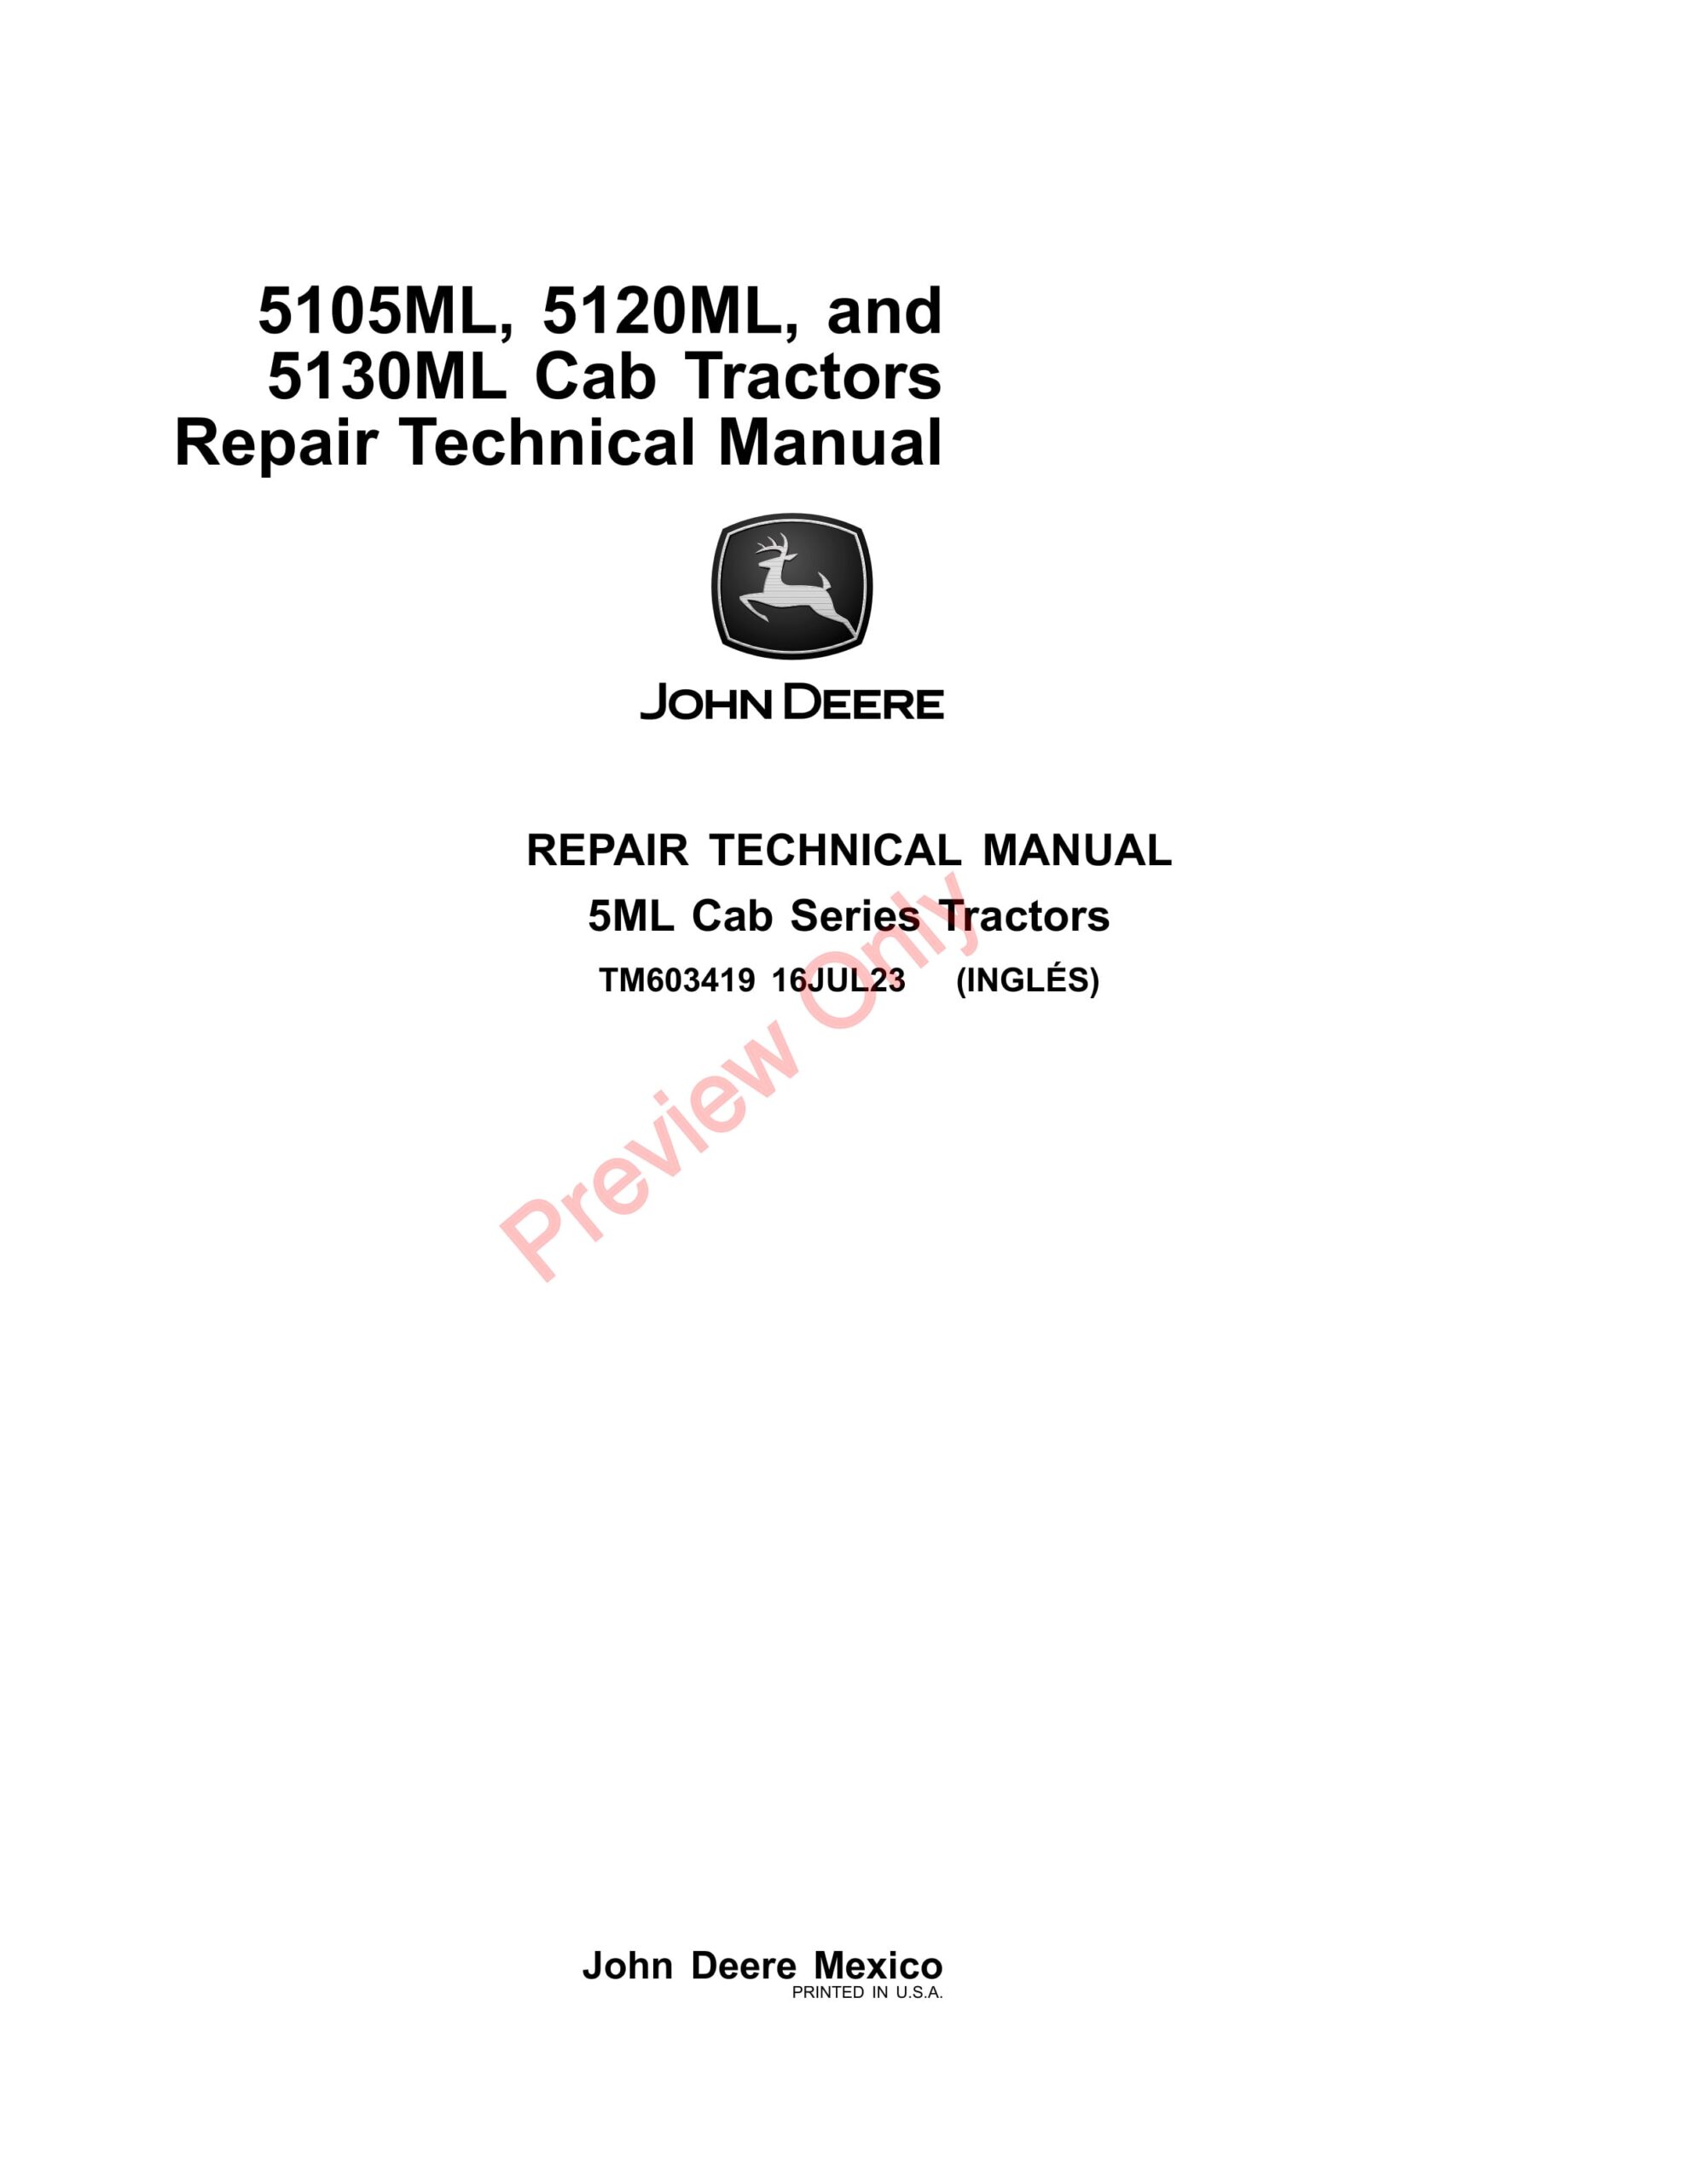 John Deere 5105ML, 5120ML, and 5130ML Cab Tractors Repair Technical Manual TM603419 16JUL23-1